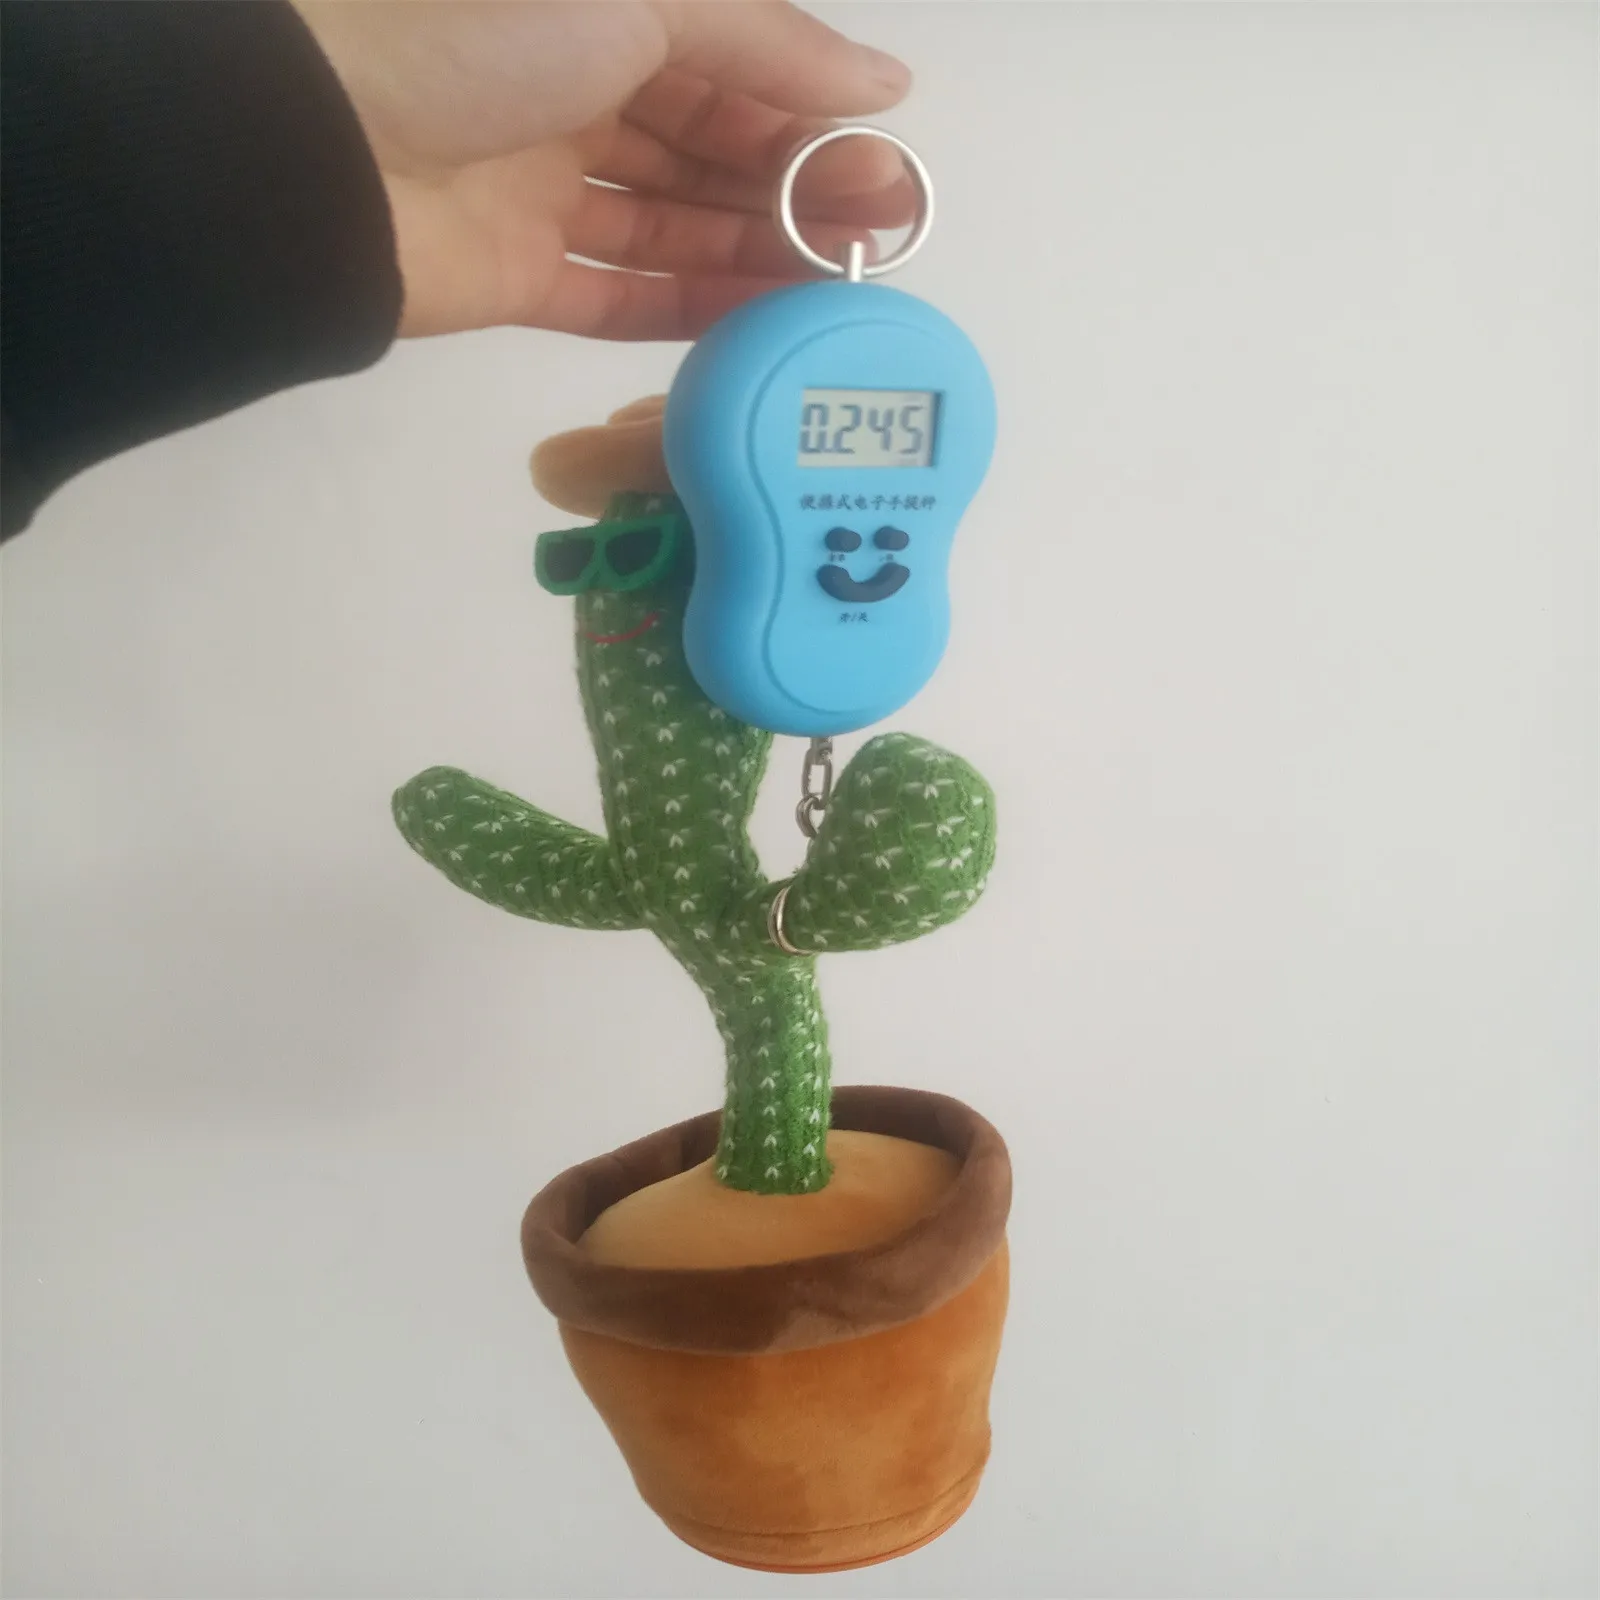 cactus toy music